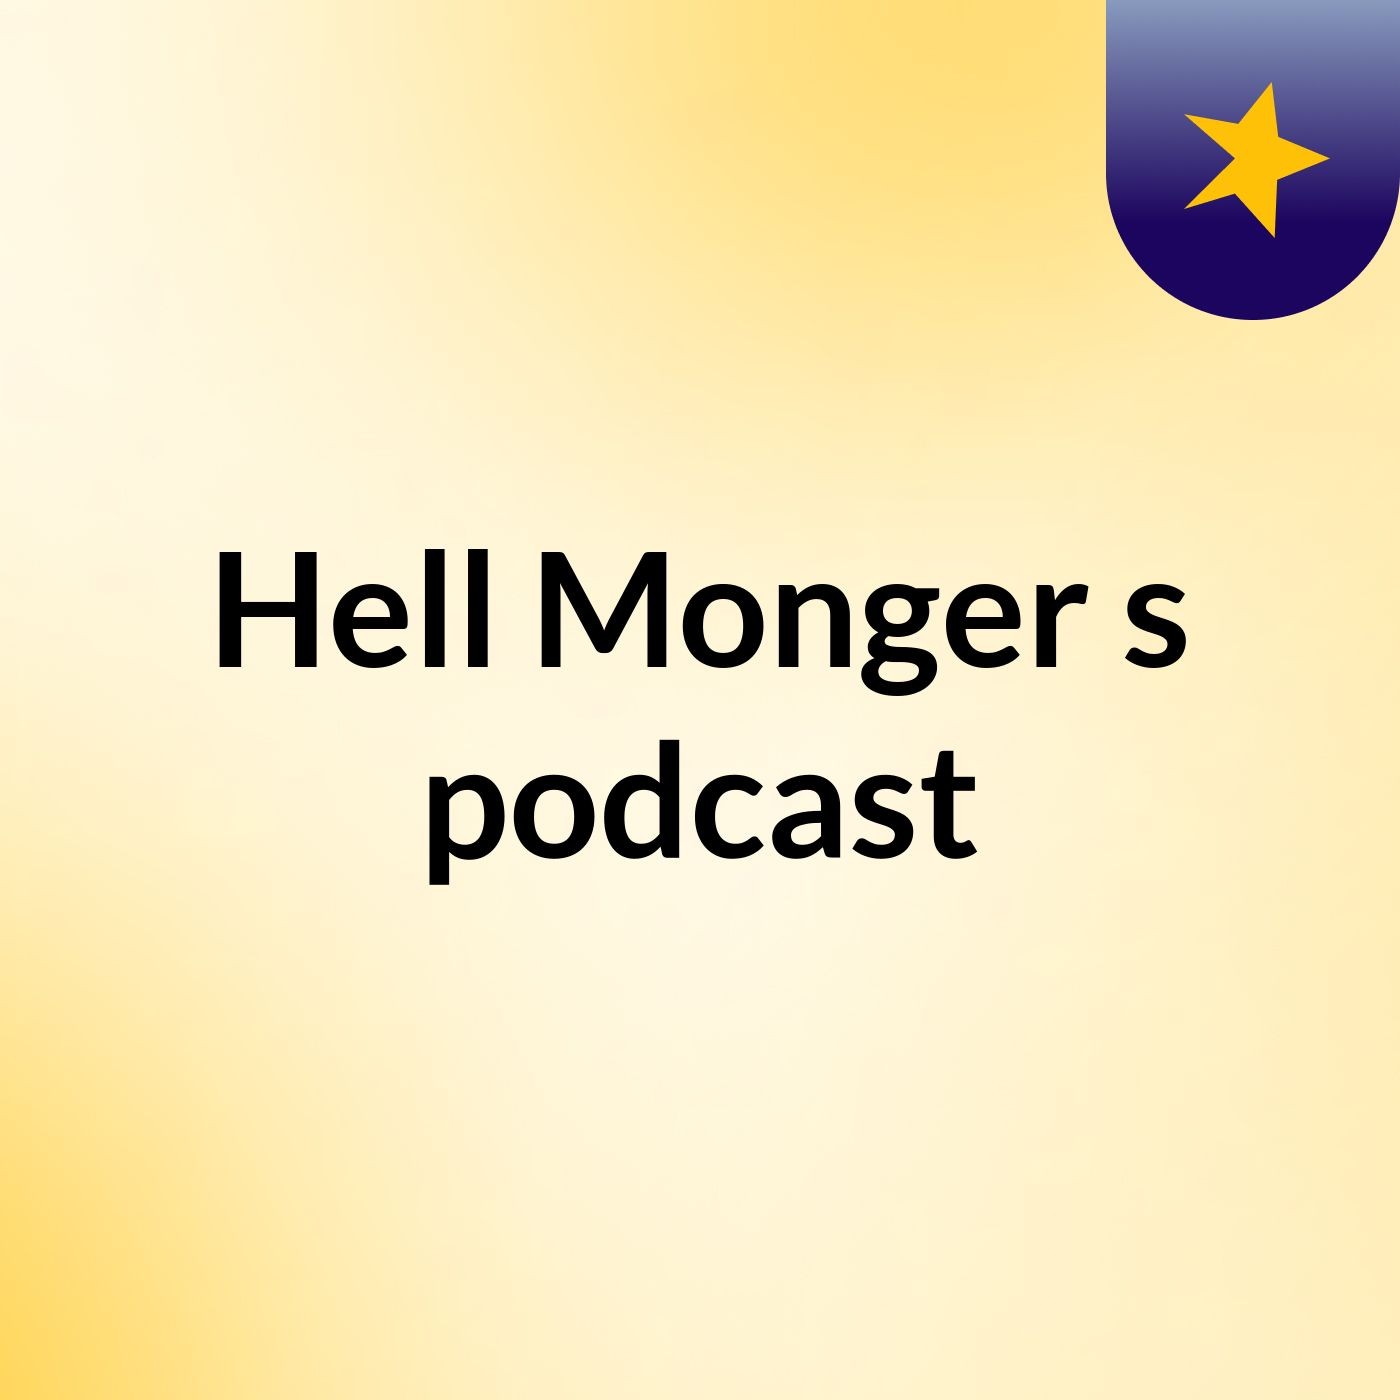 Hell Monger's podcast